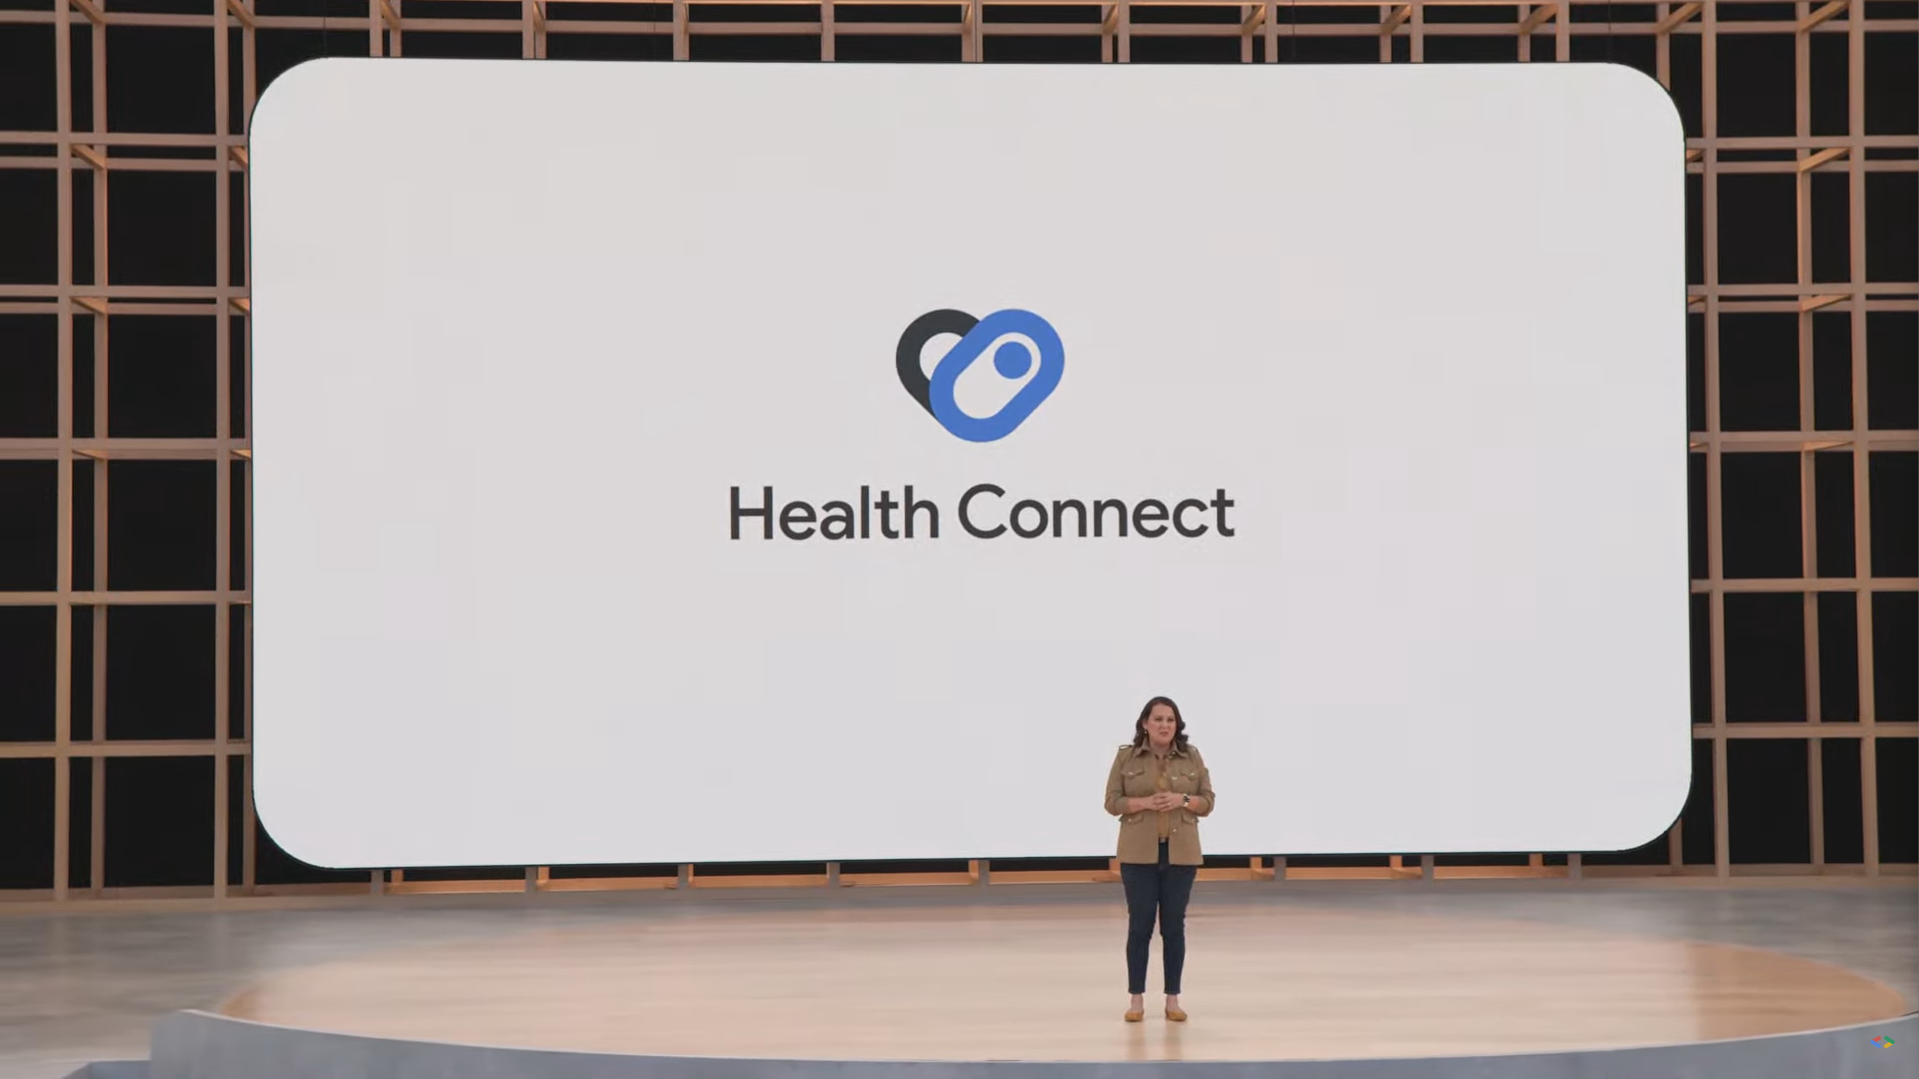 Uma pessoa está no palco durante o Google I/O em frente a uma tela grande com as palavras 